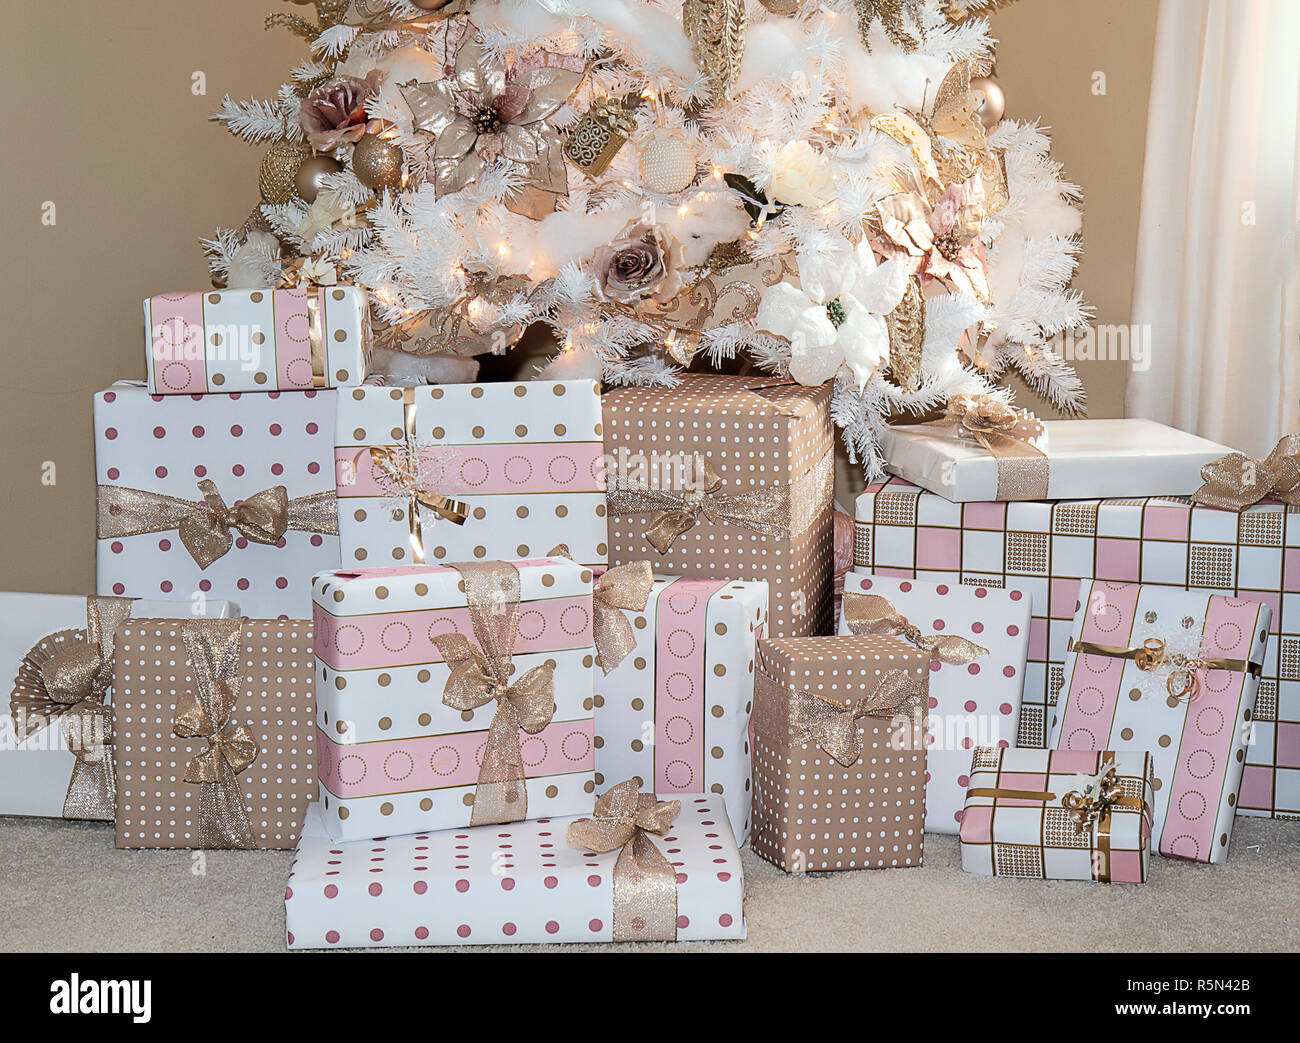 Rêve Blanc arbre de Noël dans la salle de séjour de maison décorée en rose tendre populaires des ornements et les cadeaux ci-dessous correspondant au papier d'emballage. Banque D'Images